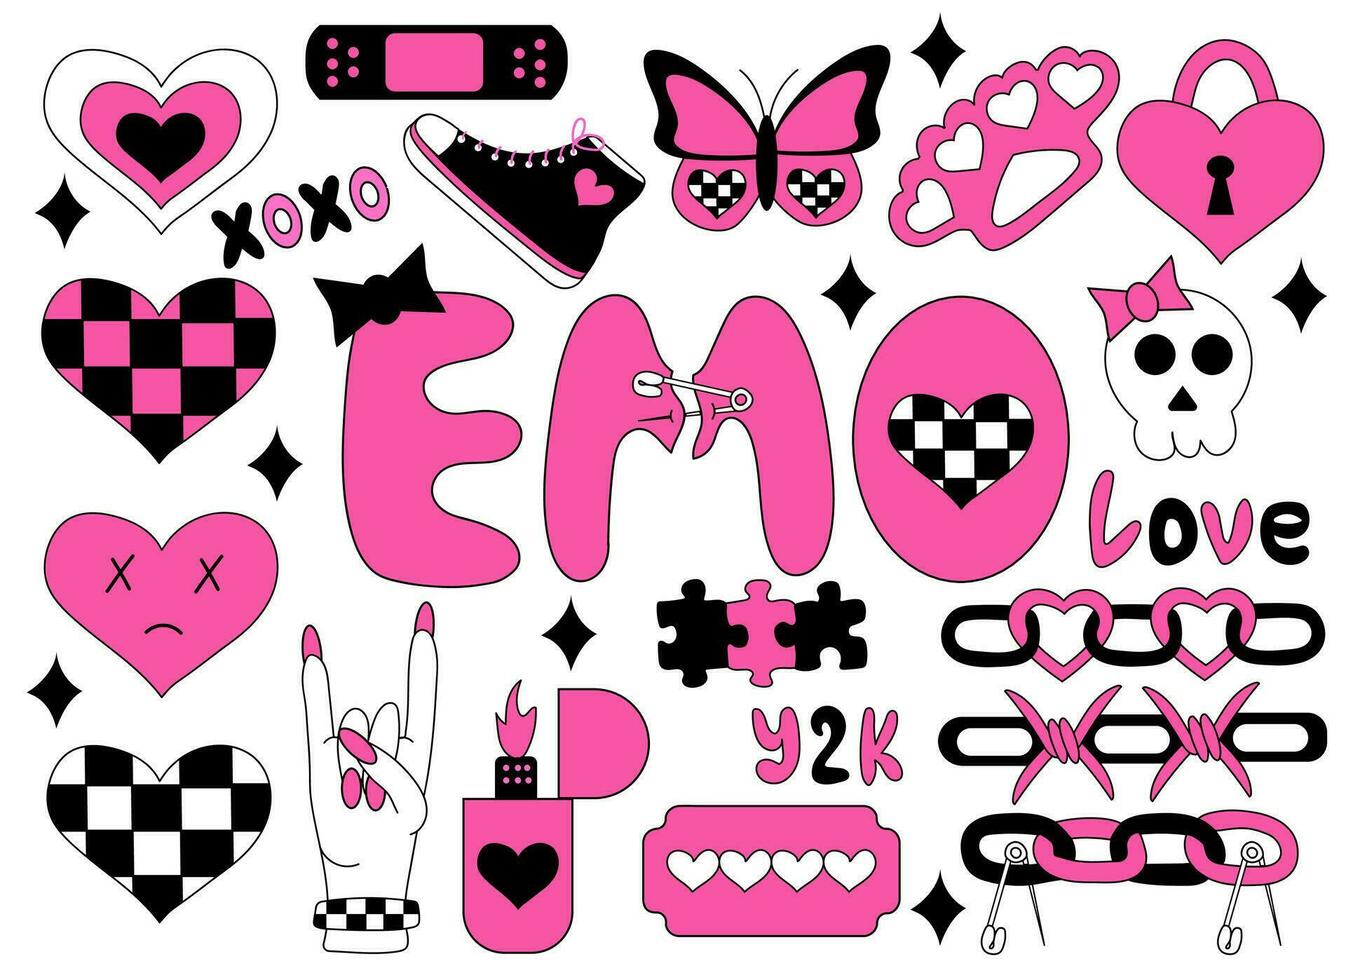 conjunto de emo elementos. y2k estilo. corazones en tablero de ajedrez, cuchilla, emo letras, cadenas, costo, rock firmar, zapatillas, mariposa, cráneo, encendedor. negro y rosado. vector plano ilustración.